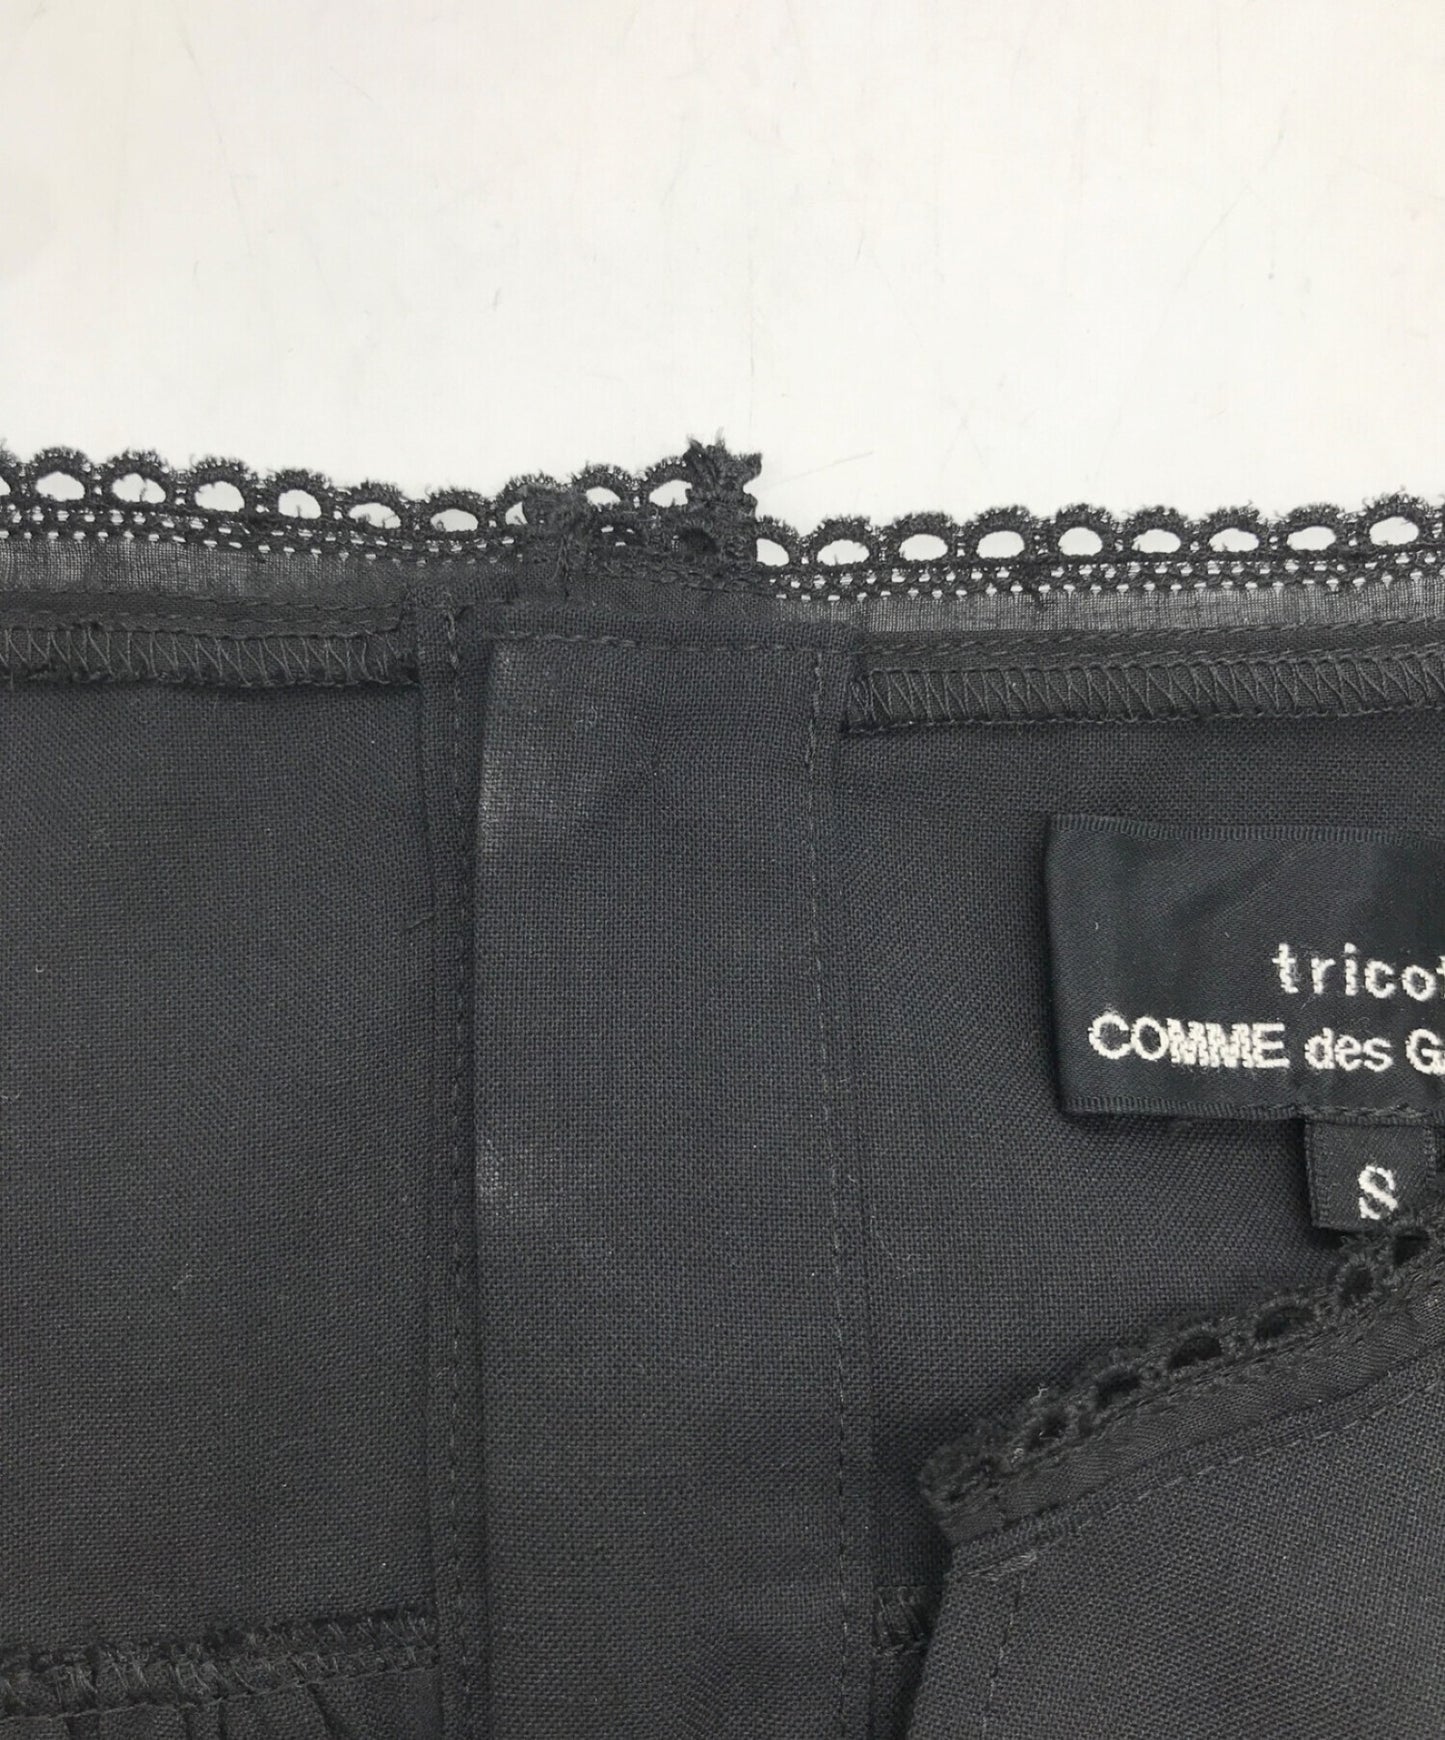 Tricot Comme des Garcons 블라우스 드레스 TE-O023